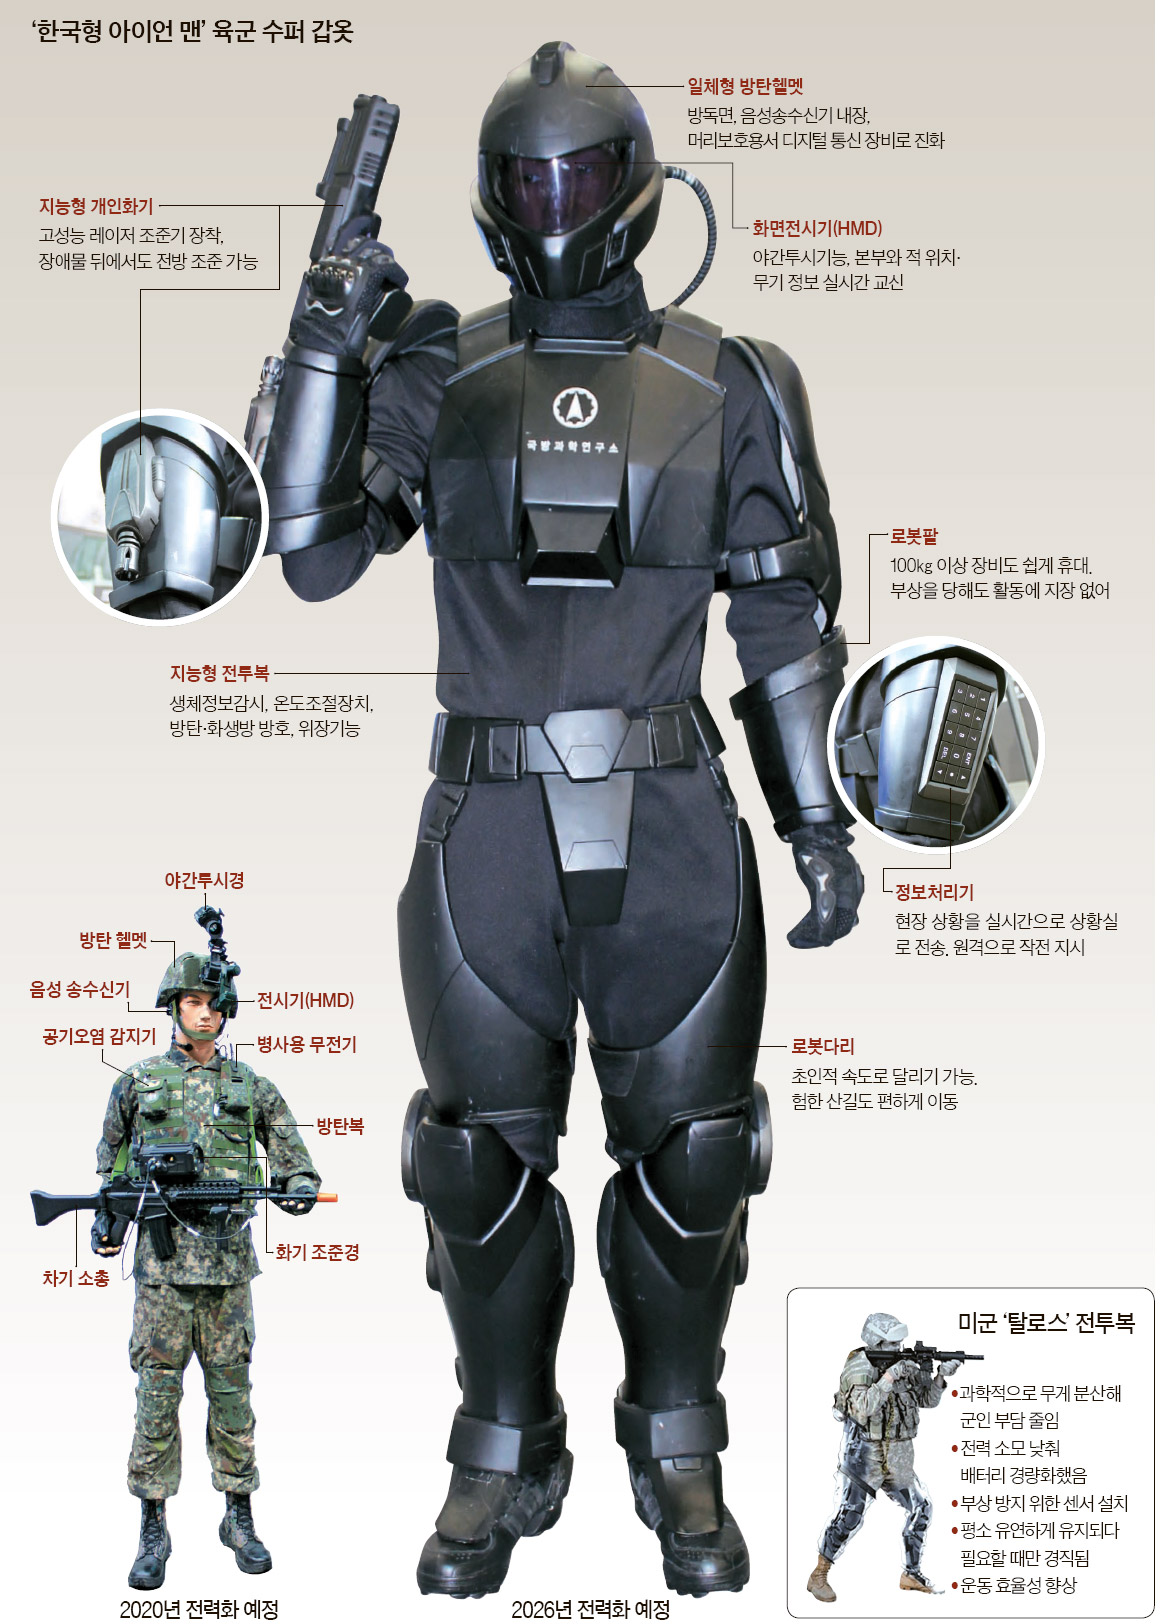 로봇 팔다리, 구글안경, 방탄복 … '아이언 맨' 한국군